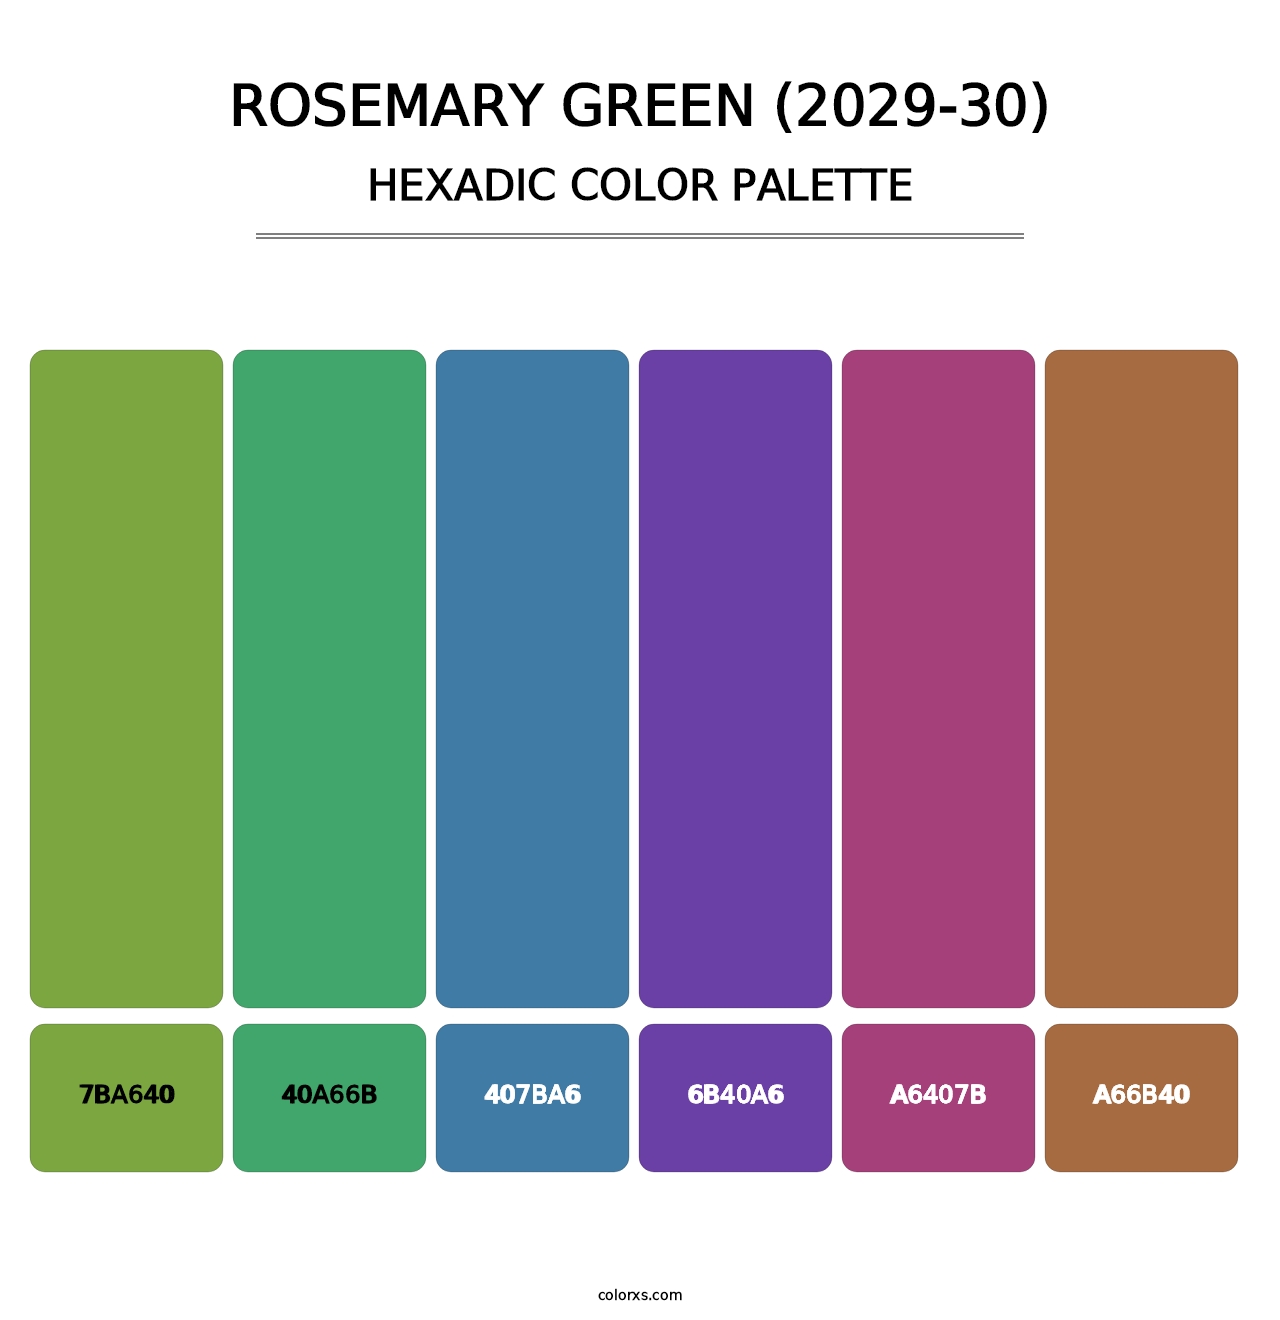 Rosemary Green (2029-30) - Hexadic Color Palette